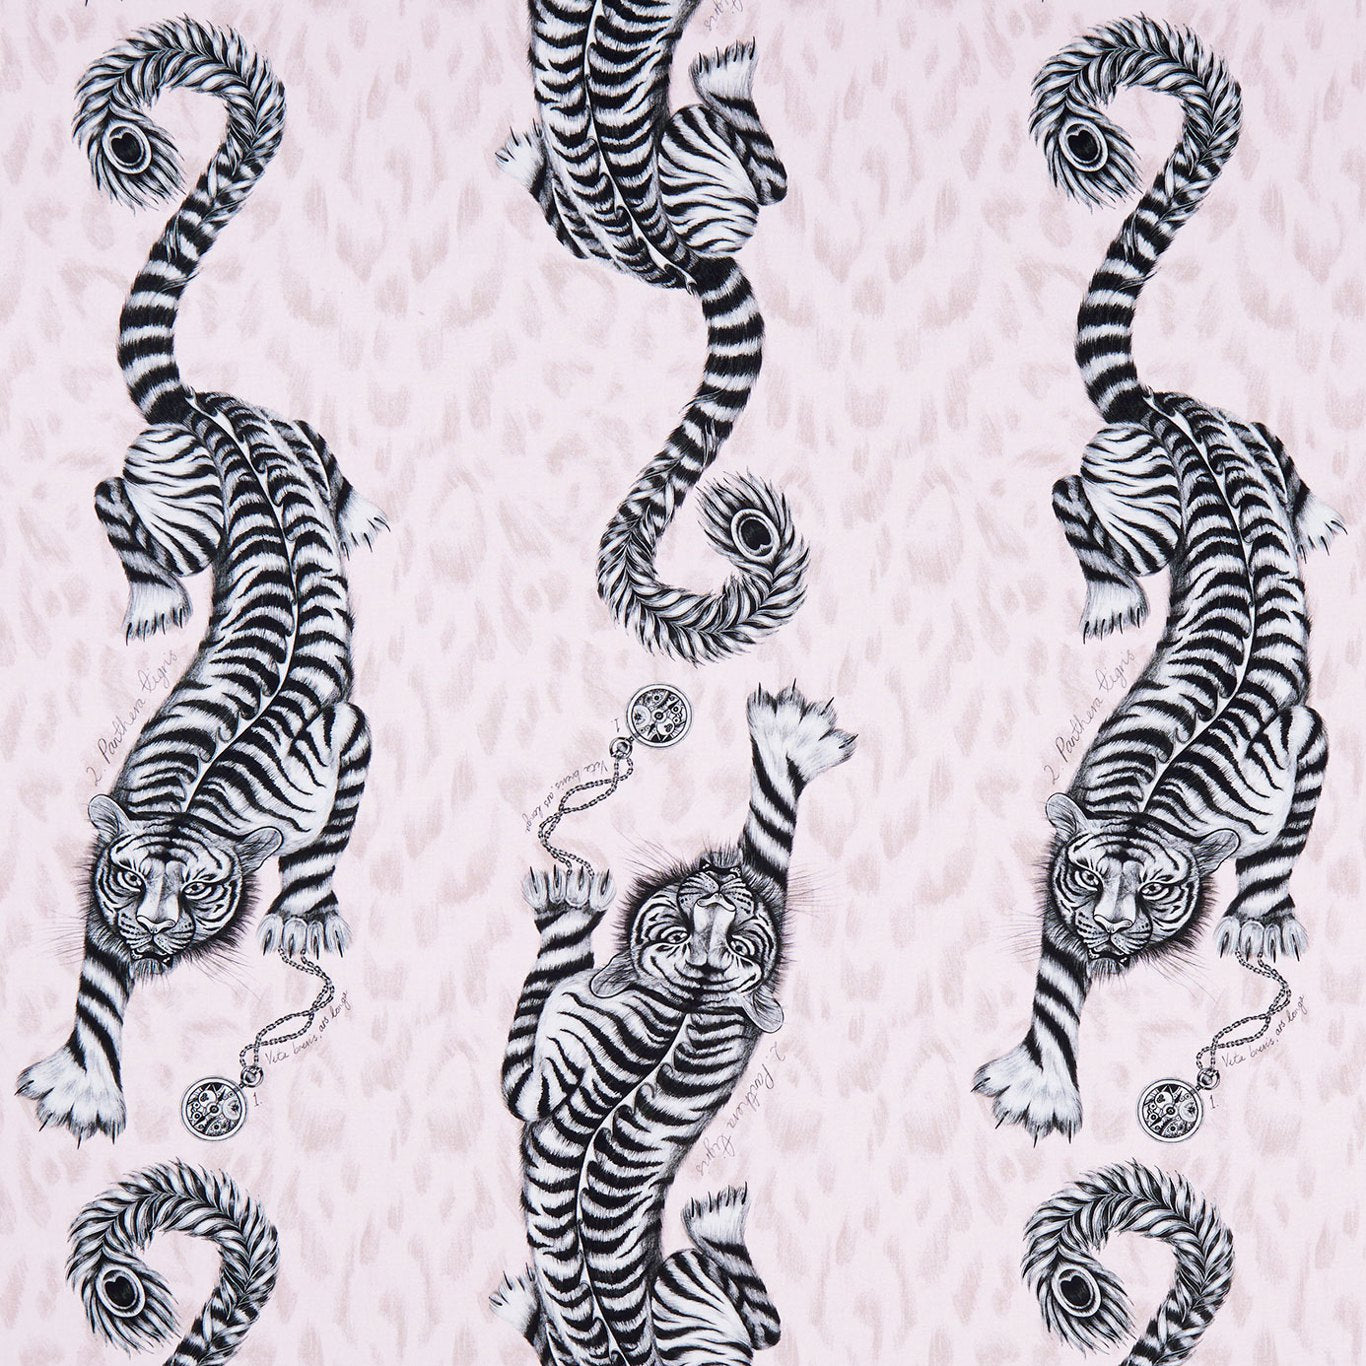 Tigris Fabric by Emma Shipley